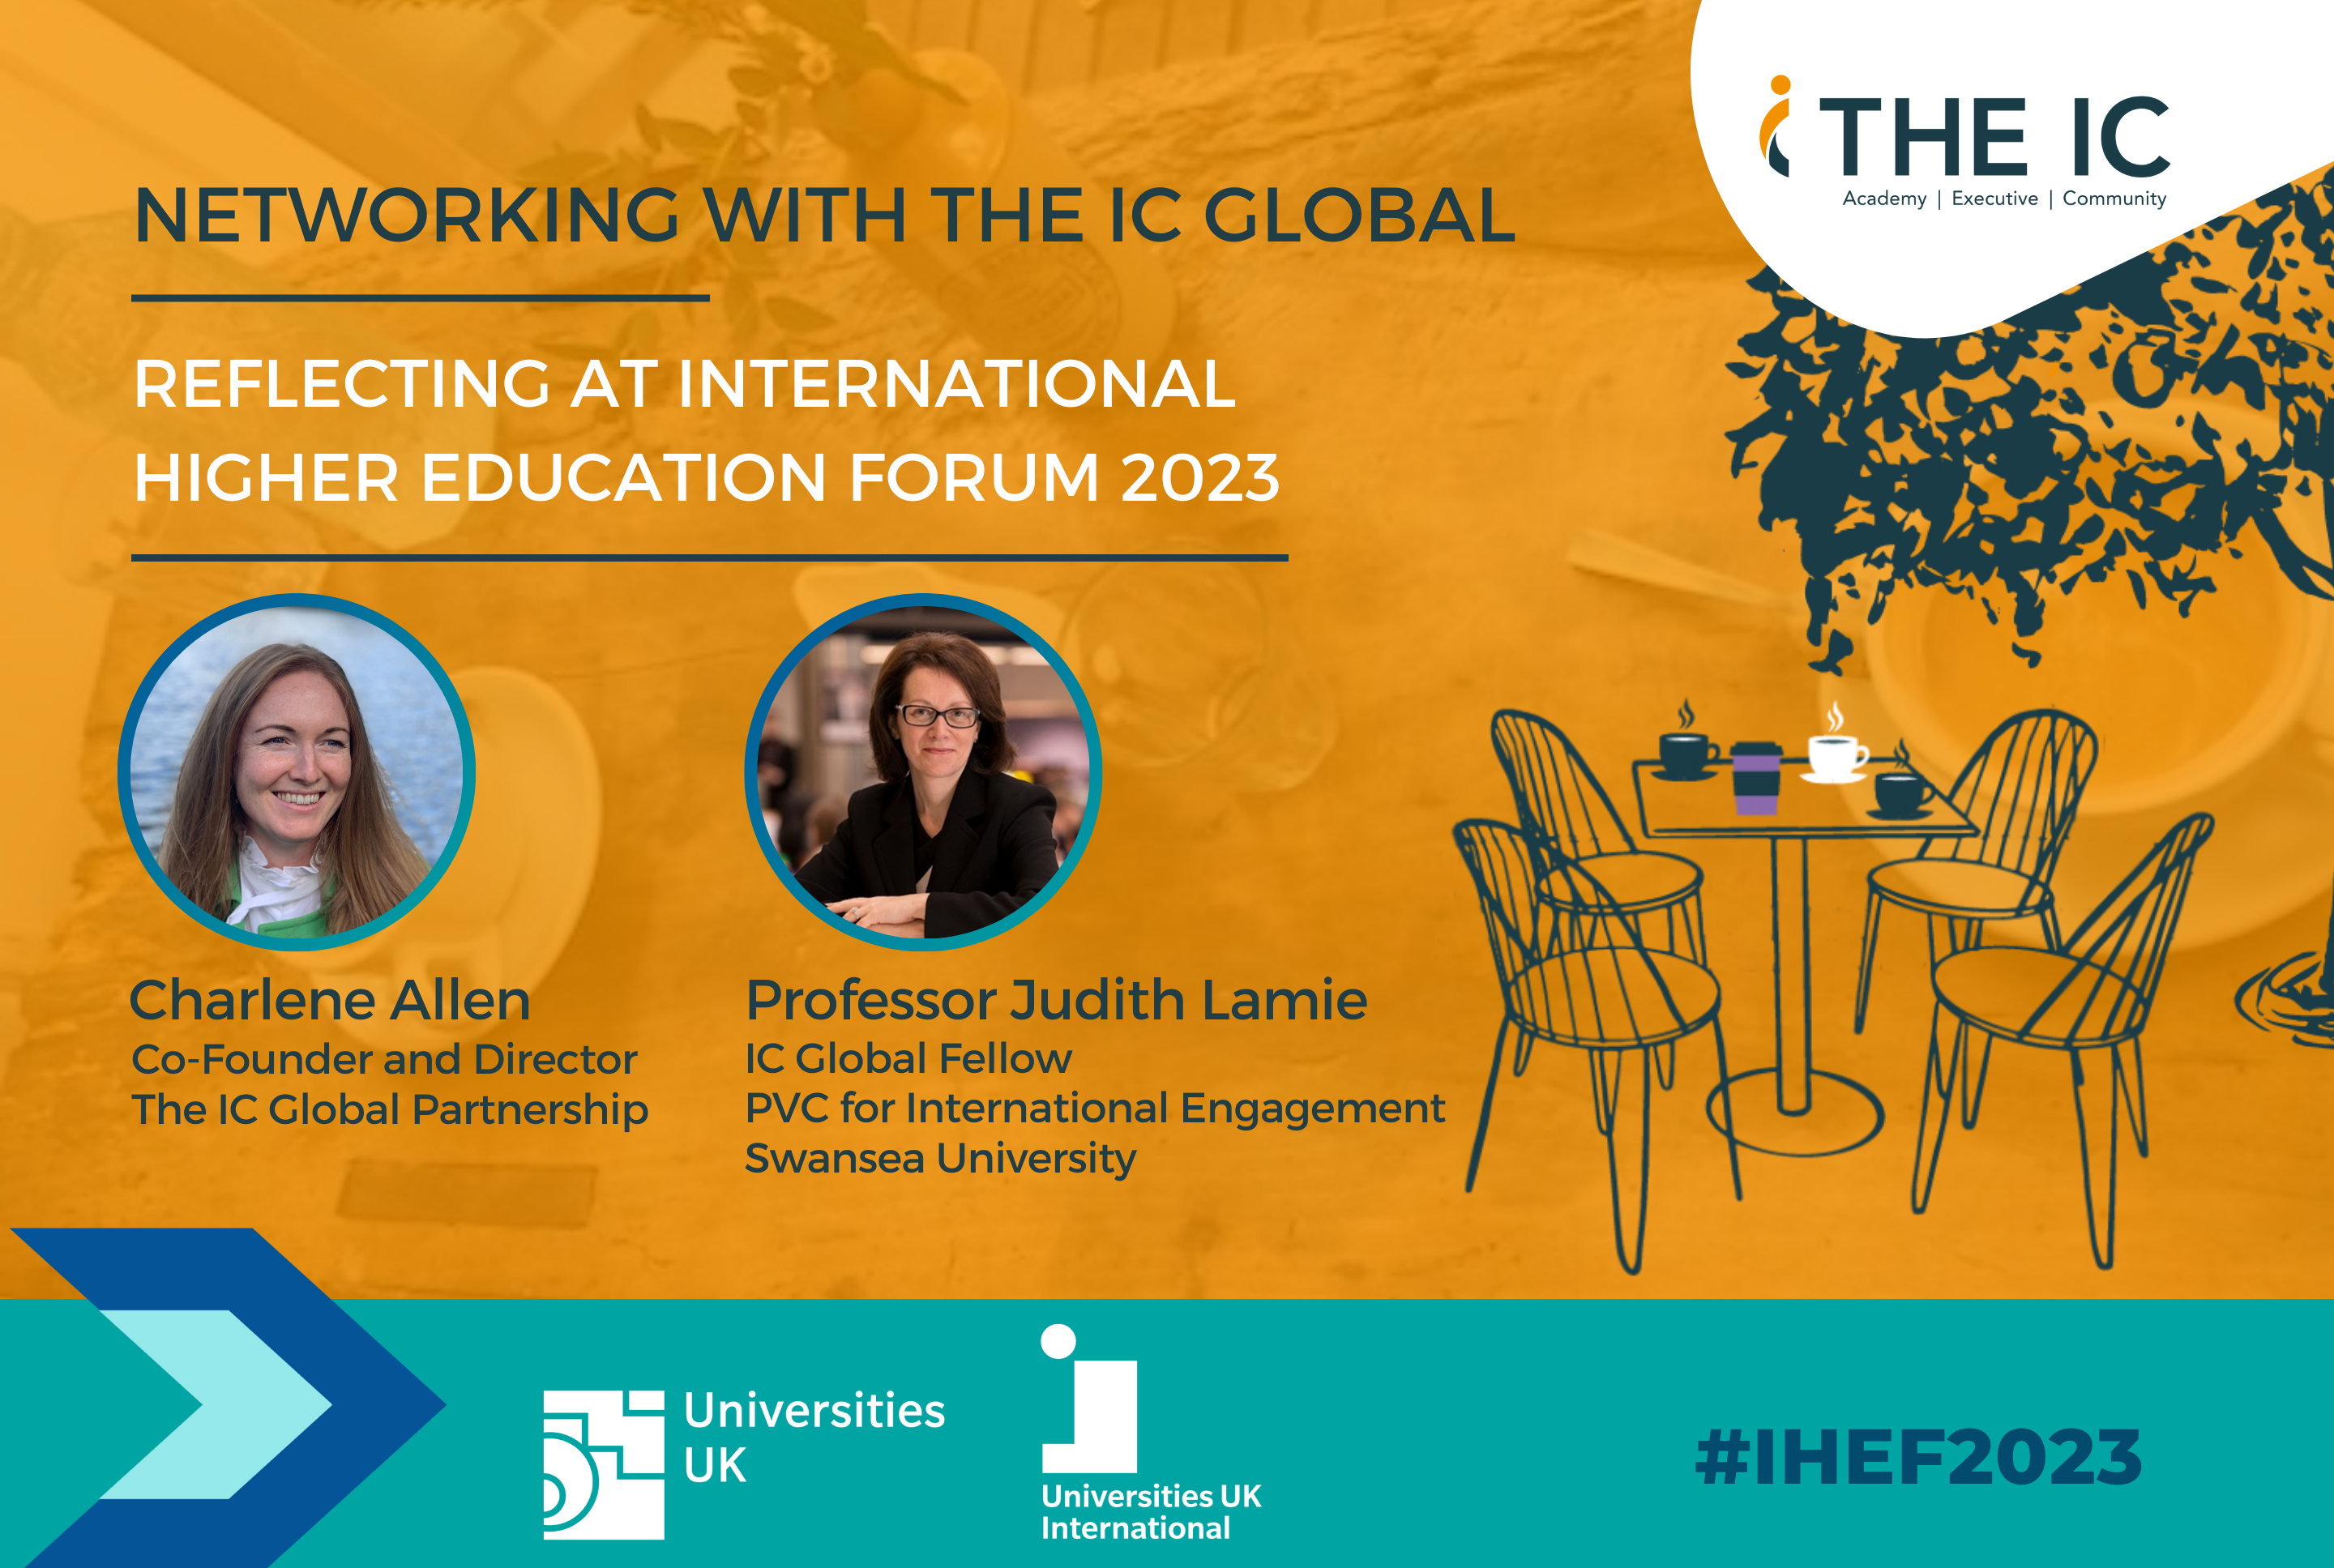 International Higher Education Forum (IHEF) 2023